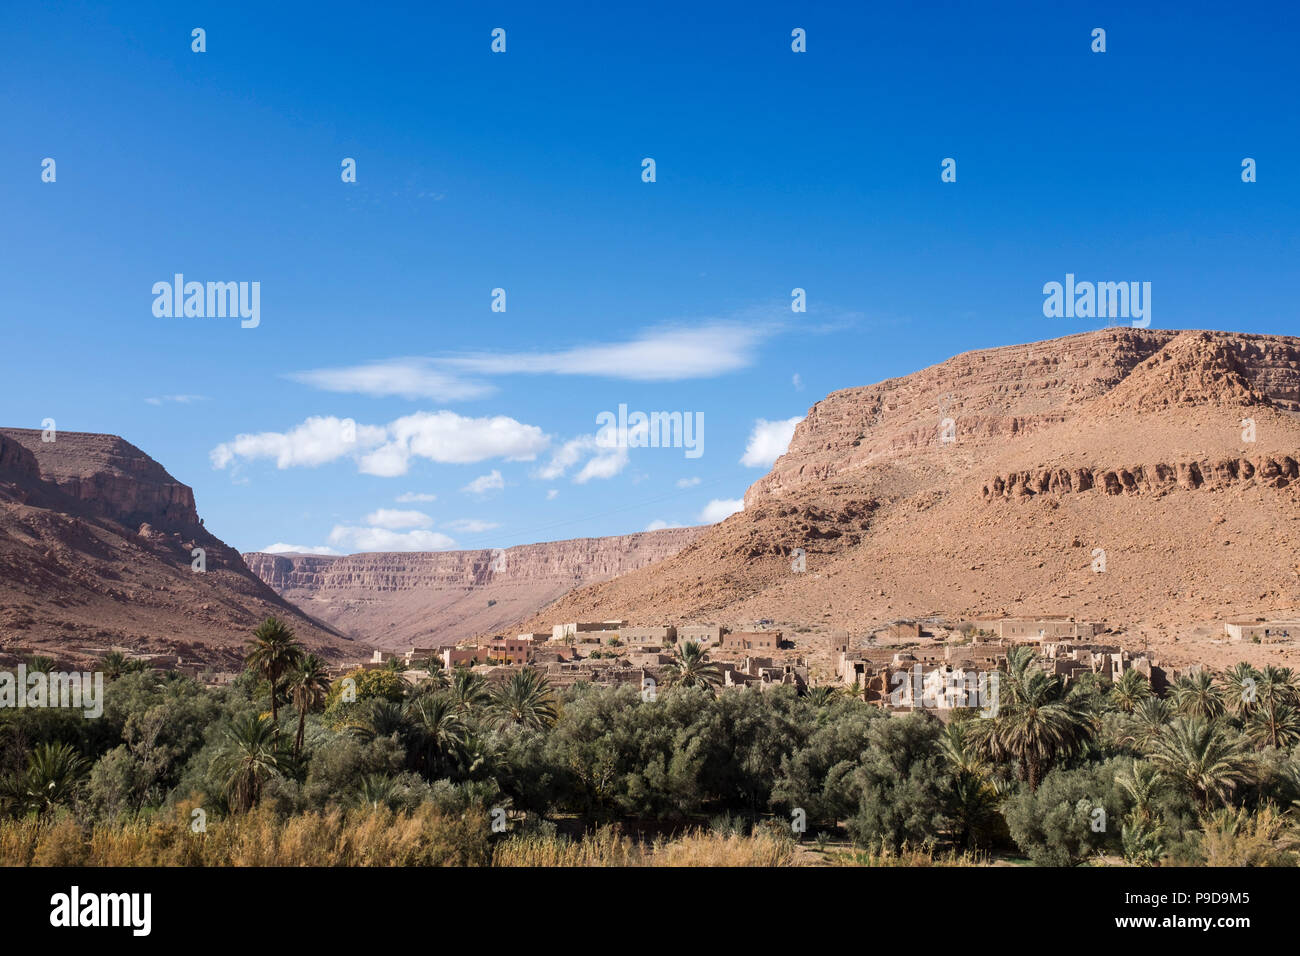 Morocco,Atlas mountains Stock Photo